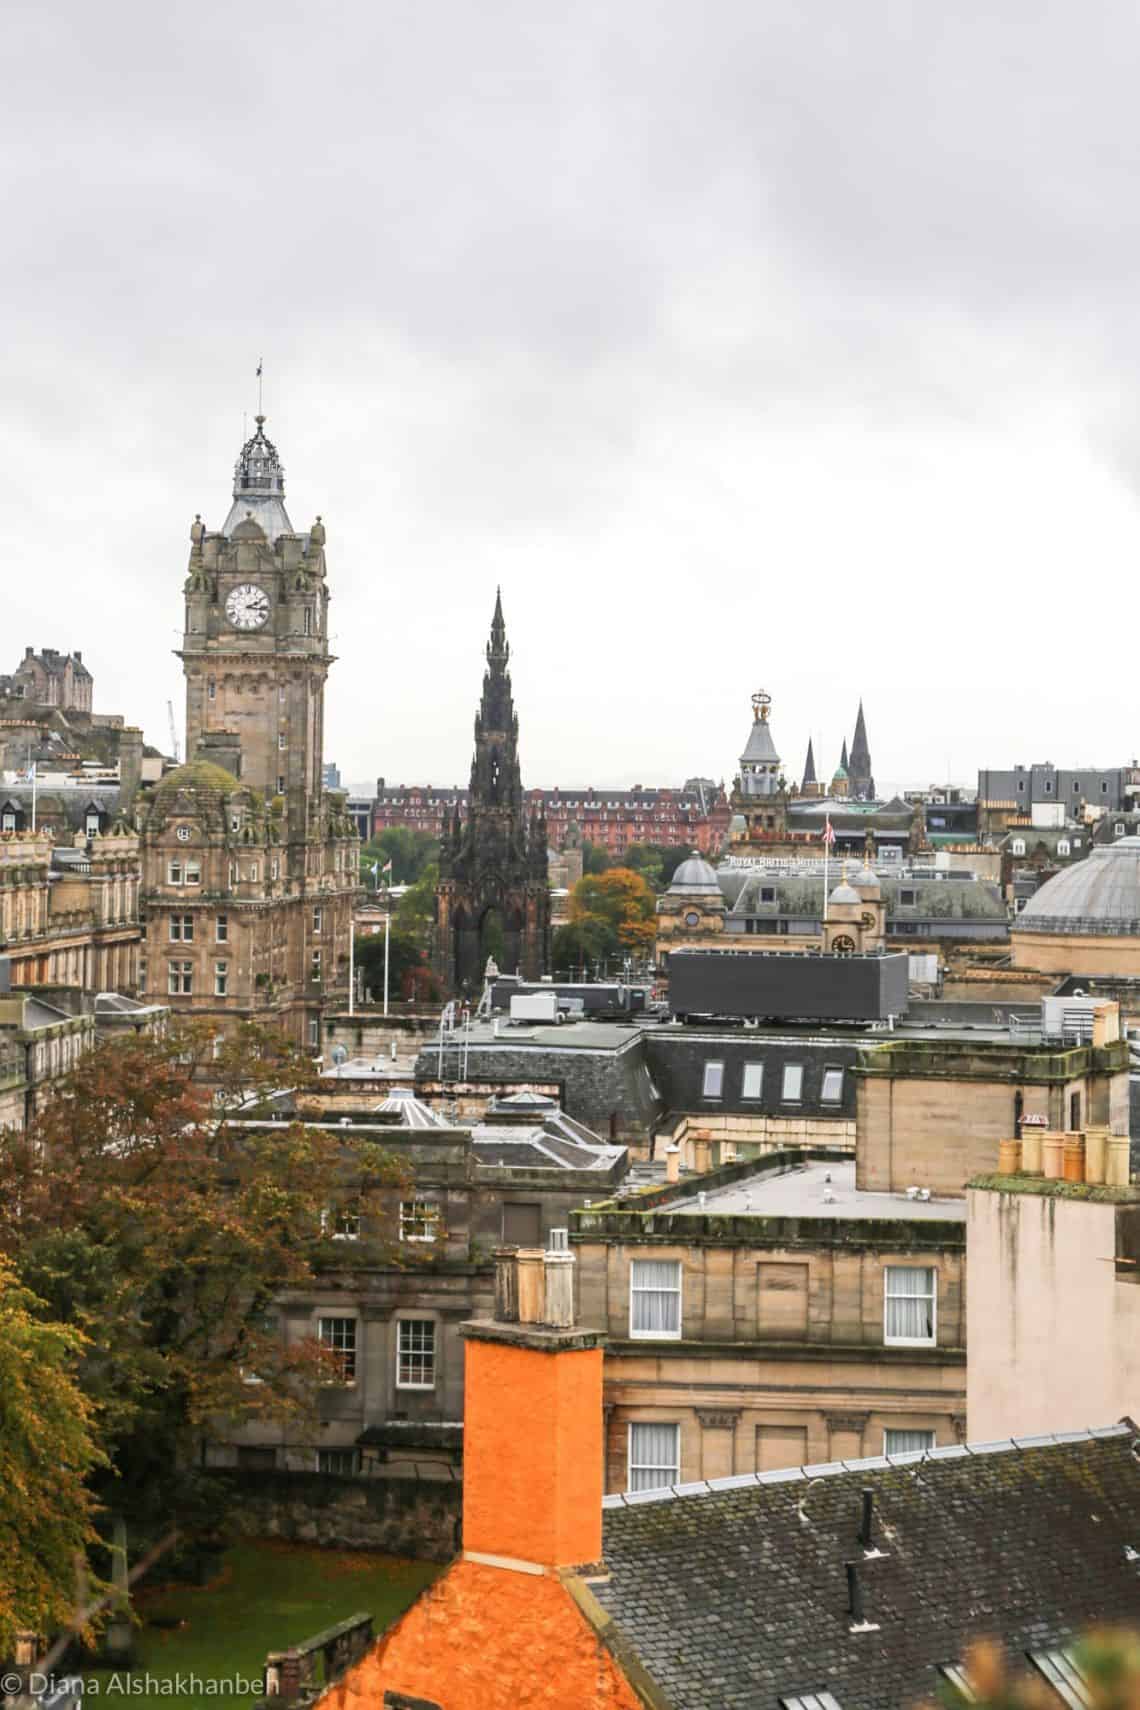 Views of Edinburgh, including a clock tower